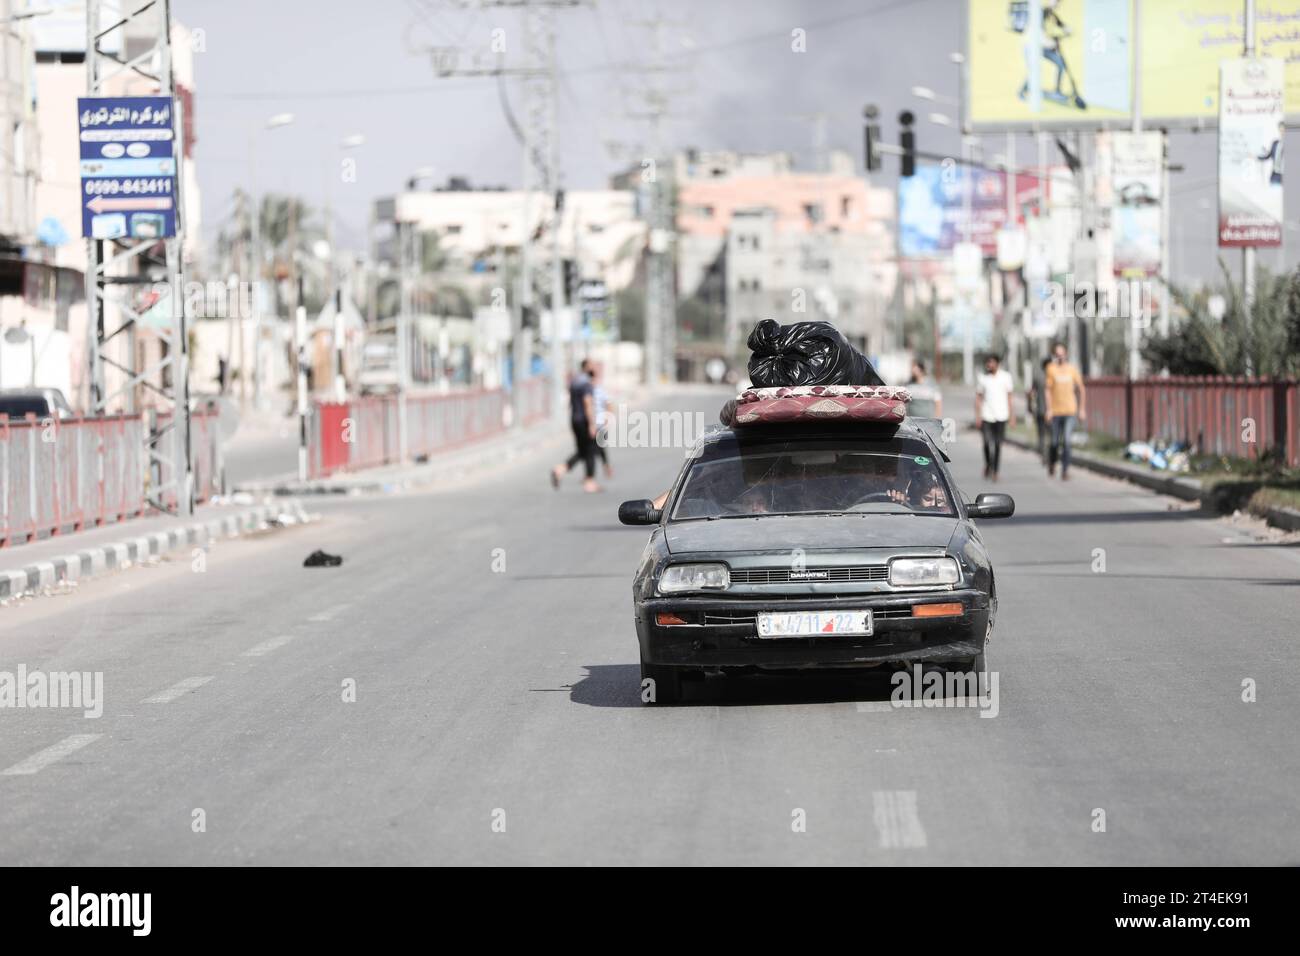 Palästinenser fahren ein Auto mit Habseligkeiten, während Rauch im Hintergrund aufsteigt, während sie aus dem Flüchtlingslager Nuseirat fliehen Palästinenser fahren ein Auto mit Habseligkeiten, während Rauch im Hintergrund auftaucht, während sie am 30. Oktober 2023 aus dem Flüchtlingslager Nuseirat im zentralen Gazastreifen fliehen. zwischen Israel und der palästinensischen Gruppe Hamas. Foto: Naaman Omar apaimages Nuseirat Gaza Streifen palästinensisches Gebiet 301023 Nuseirat NAA 0018 Copyright: XapaimagesxNaamanxOmarxxxapaimagesx Credit: Imago/Alamy Live News Stockfoto